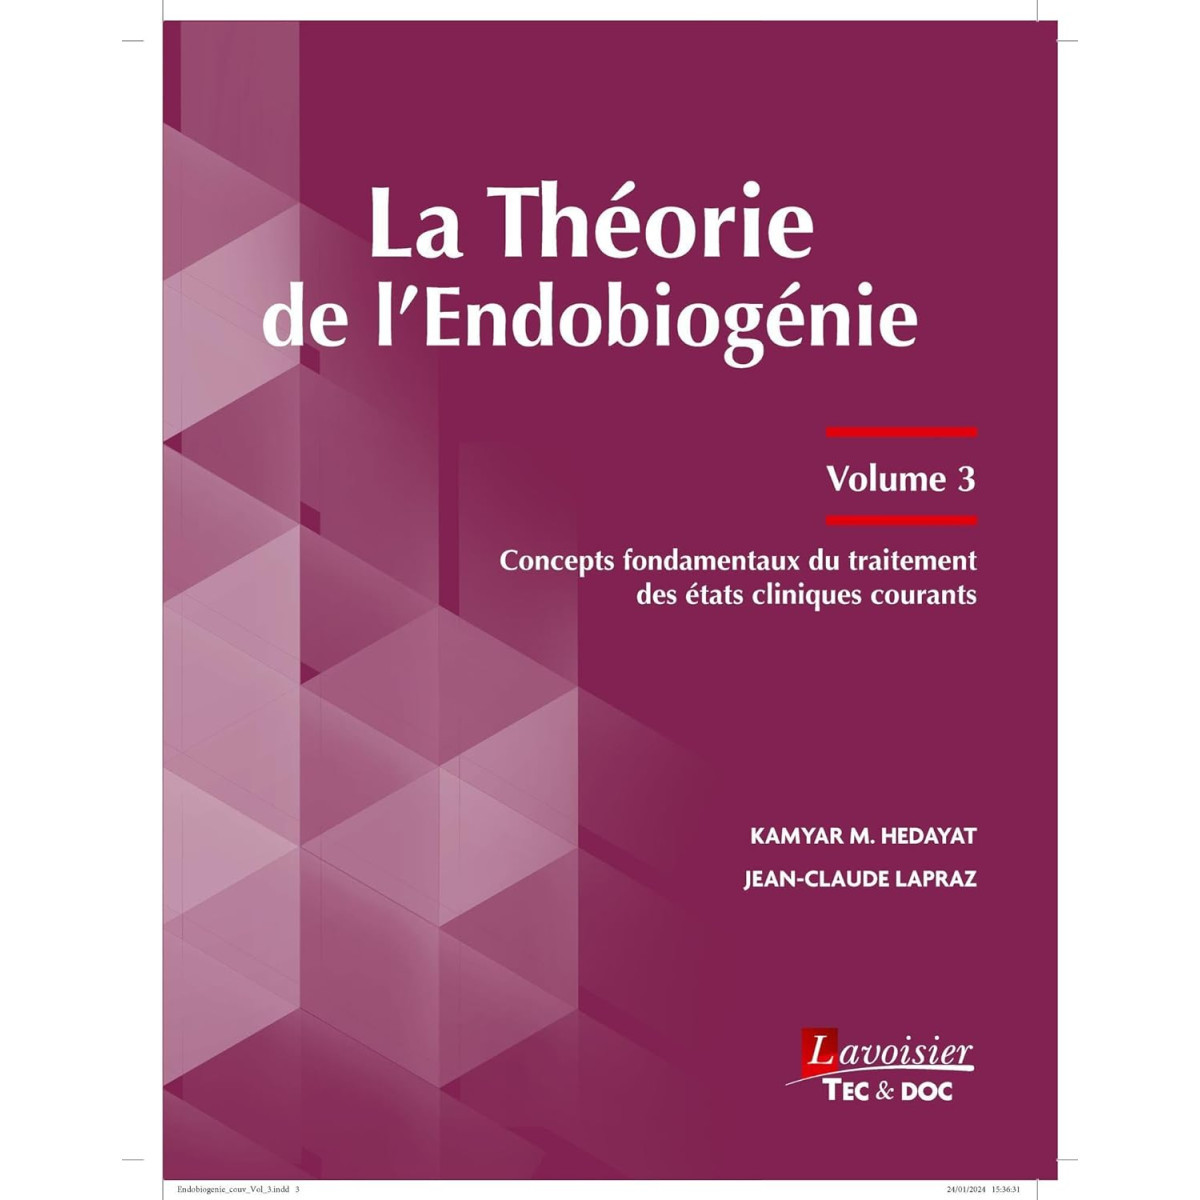 La théorie de l'endobiogénie (volume 3) - Concepts fondamentaux du traitement des états cliniques courants